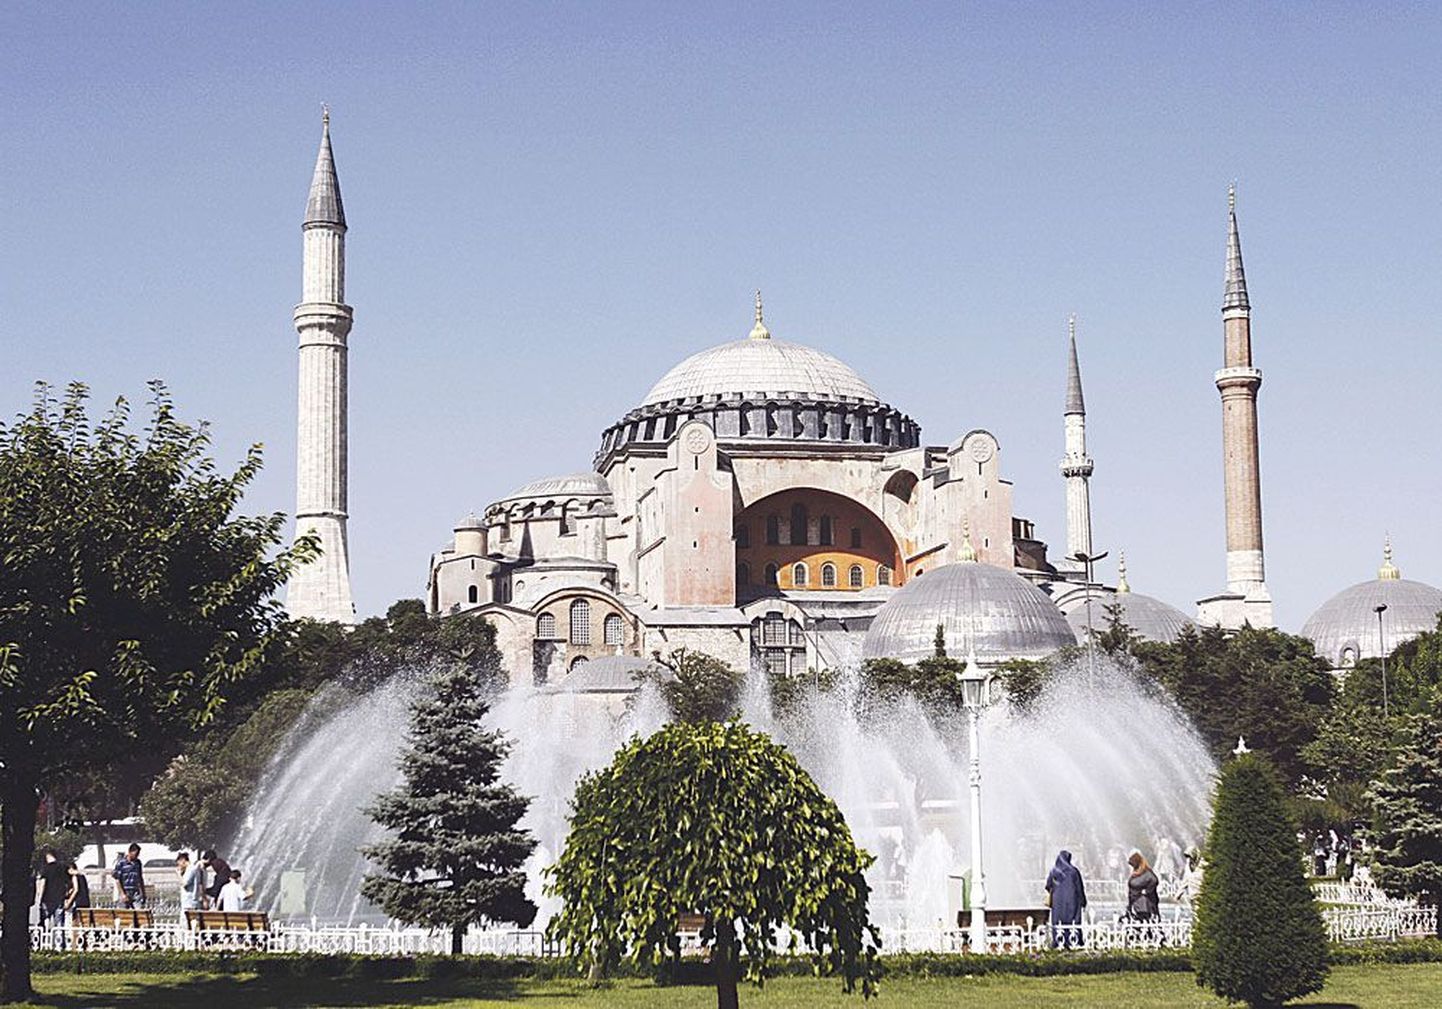 Собор Святой Софии, или Премудрости Божией, в Стамбуле – всемирно известный памятник византийского зодчества, символ «золотого века» Византии.